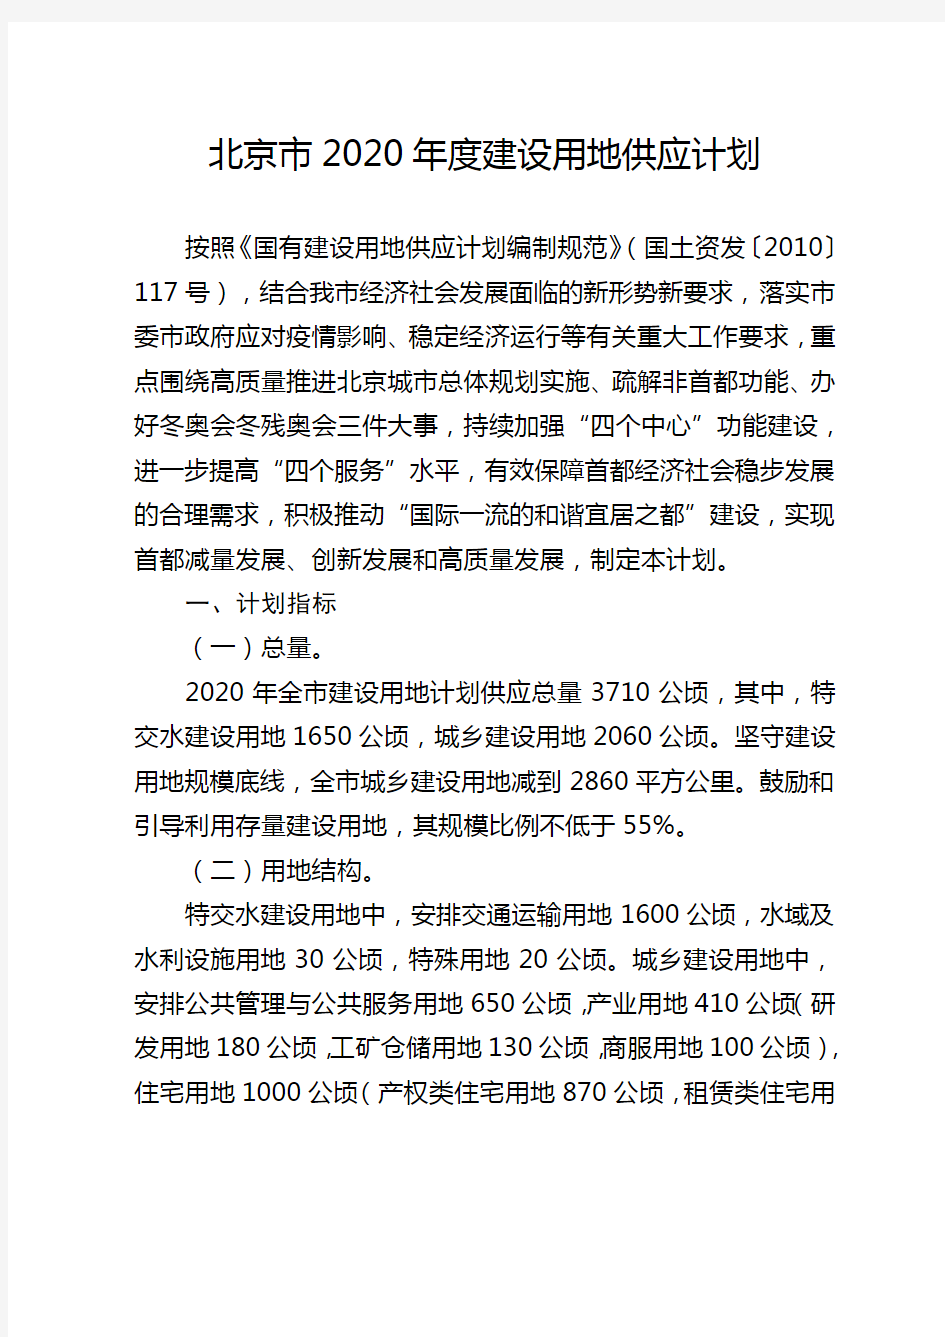 北京市2020年度建设用地供应计划